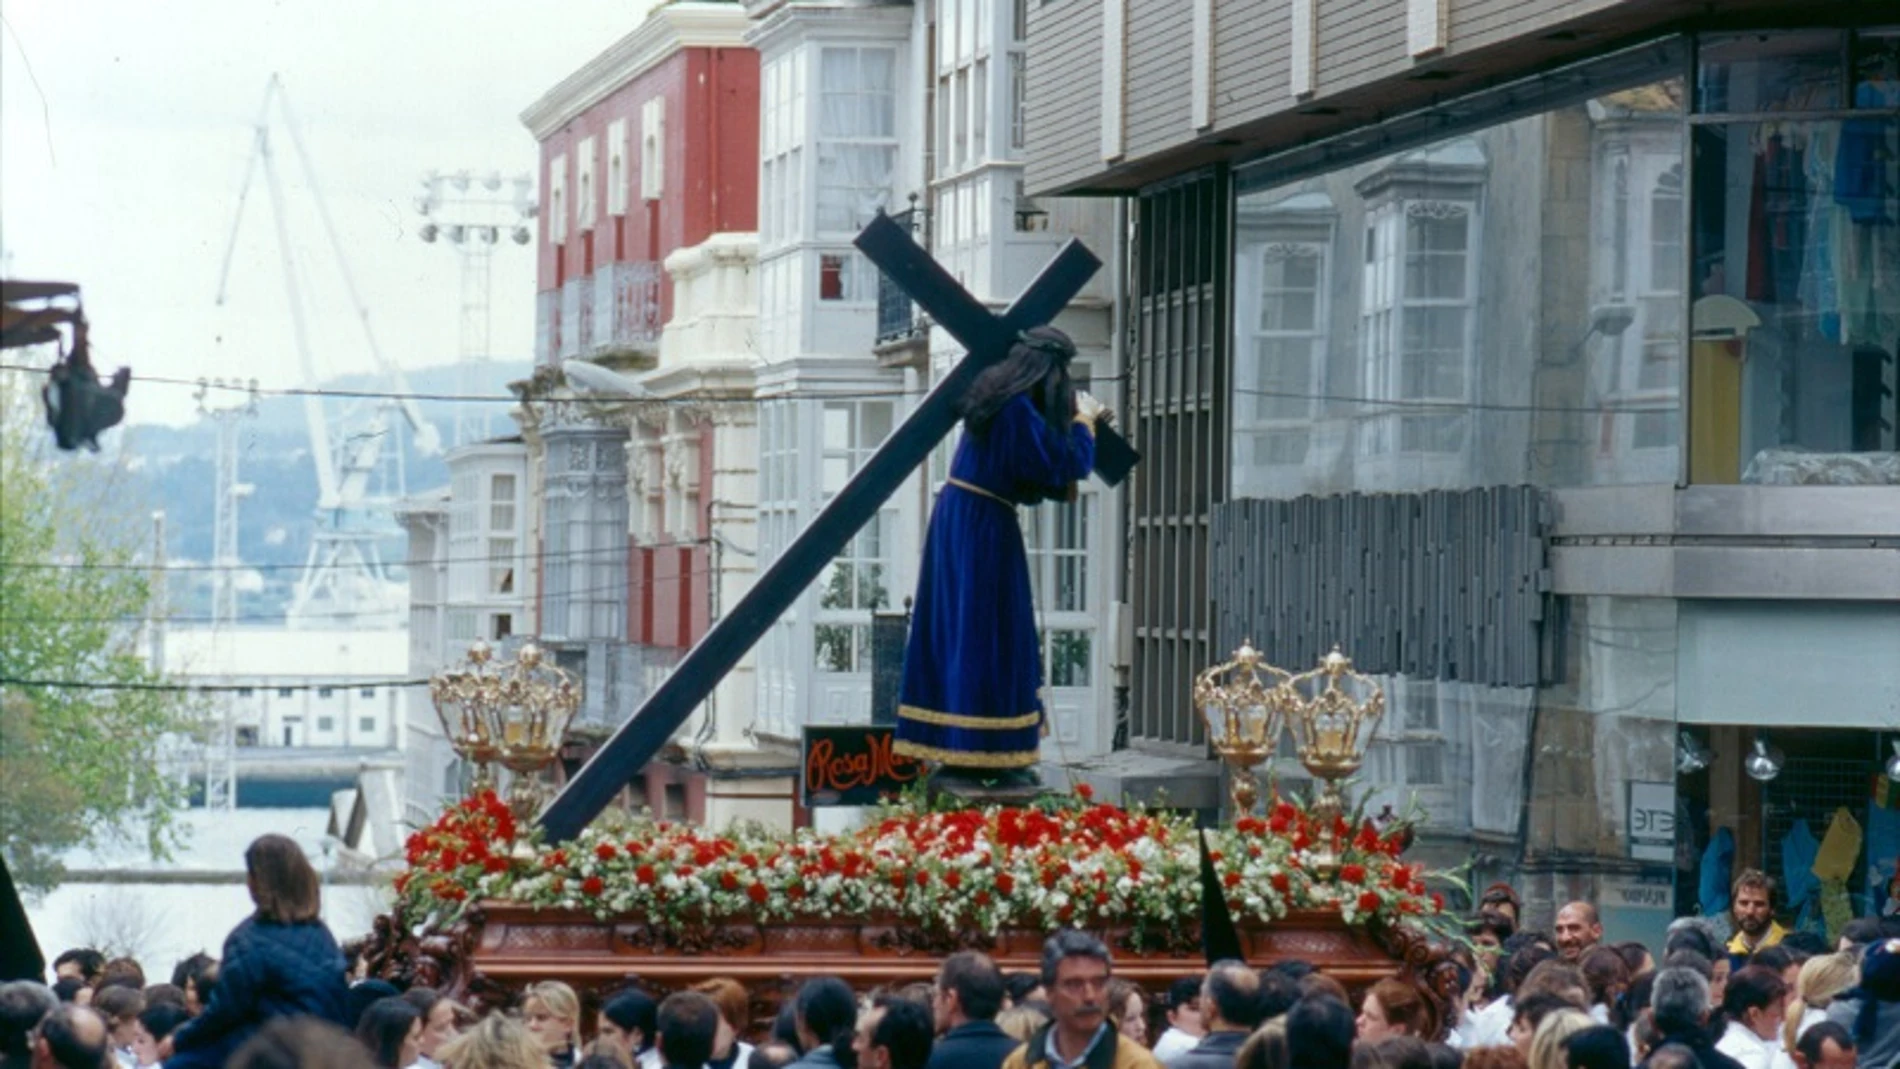 La Semana Santa de Ferrol está considerada de Interés Turístico Internacional desde 2014.